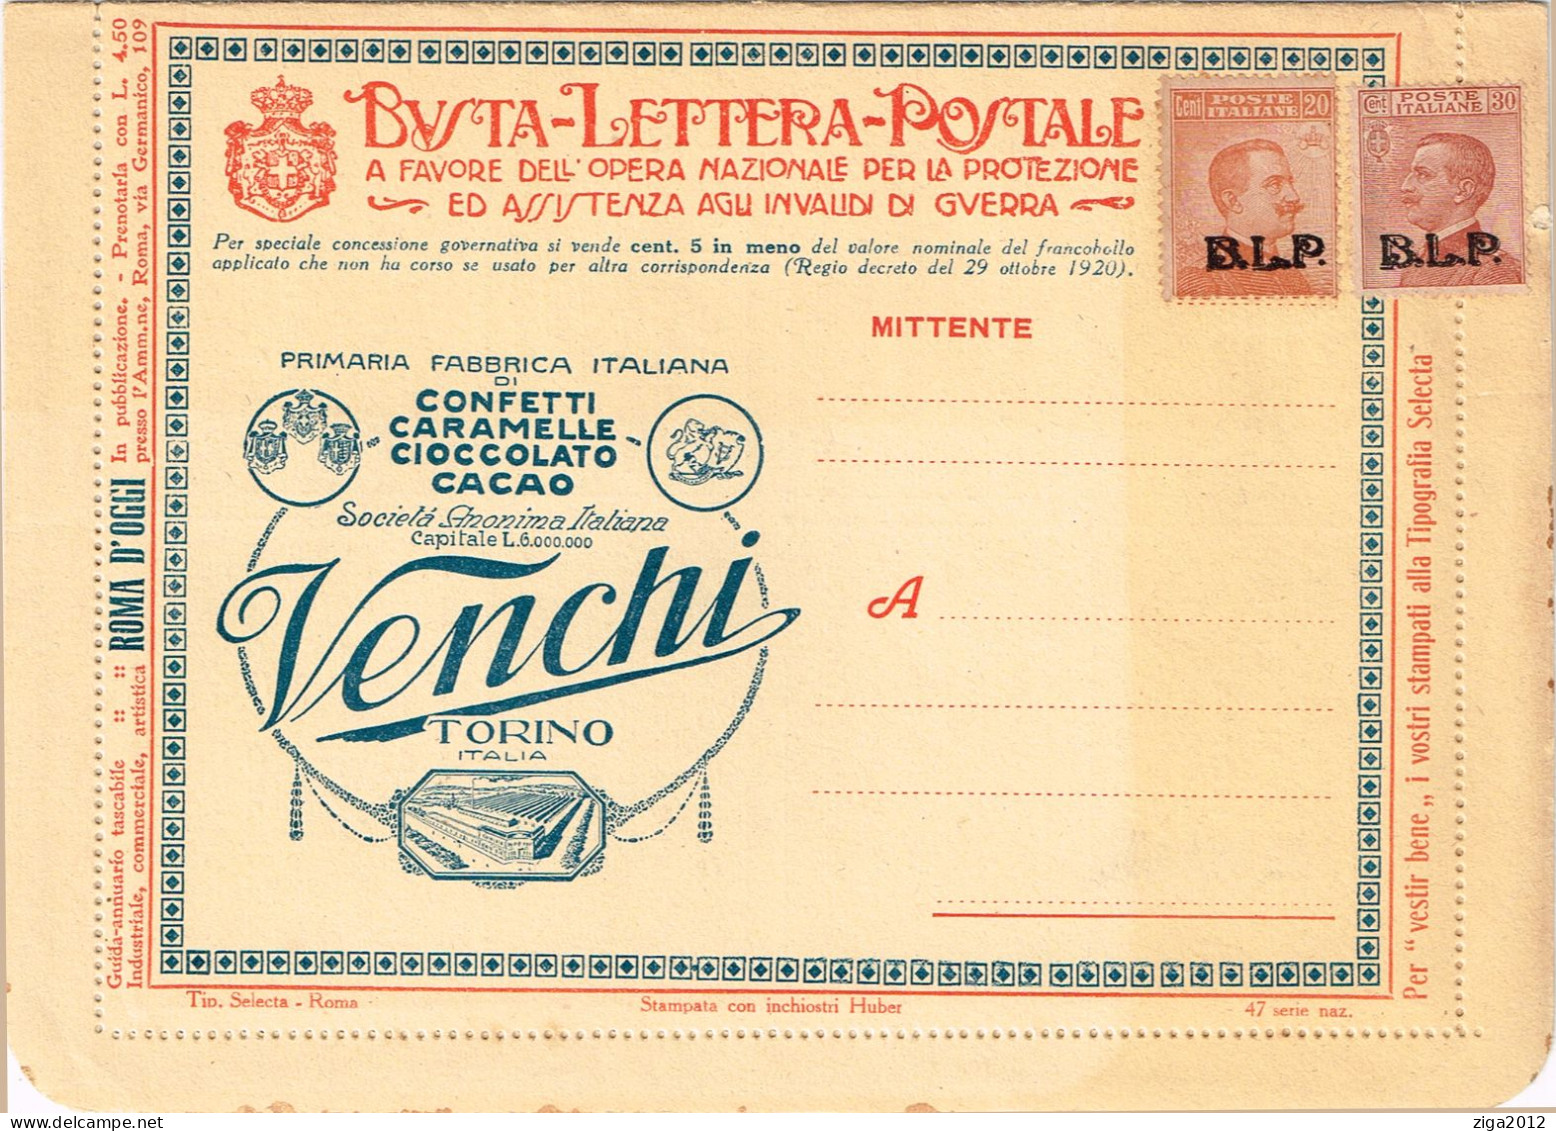 ITALY 1923 B.L.P. BUSTA LETTERA POSTALE CON C.20 III° TIPO + C.30 III° TIPO NUOVA E COMPLETA - Publicité